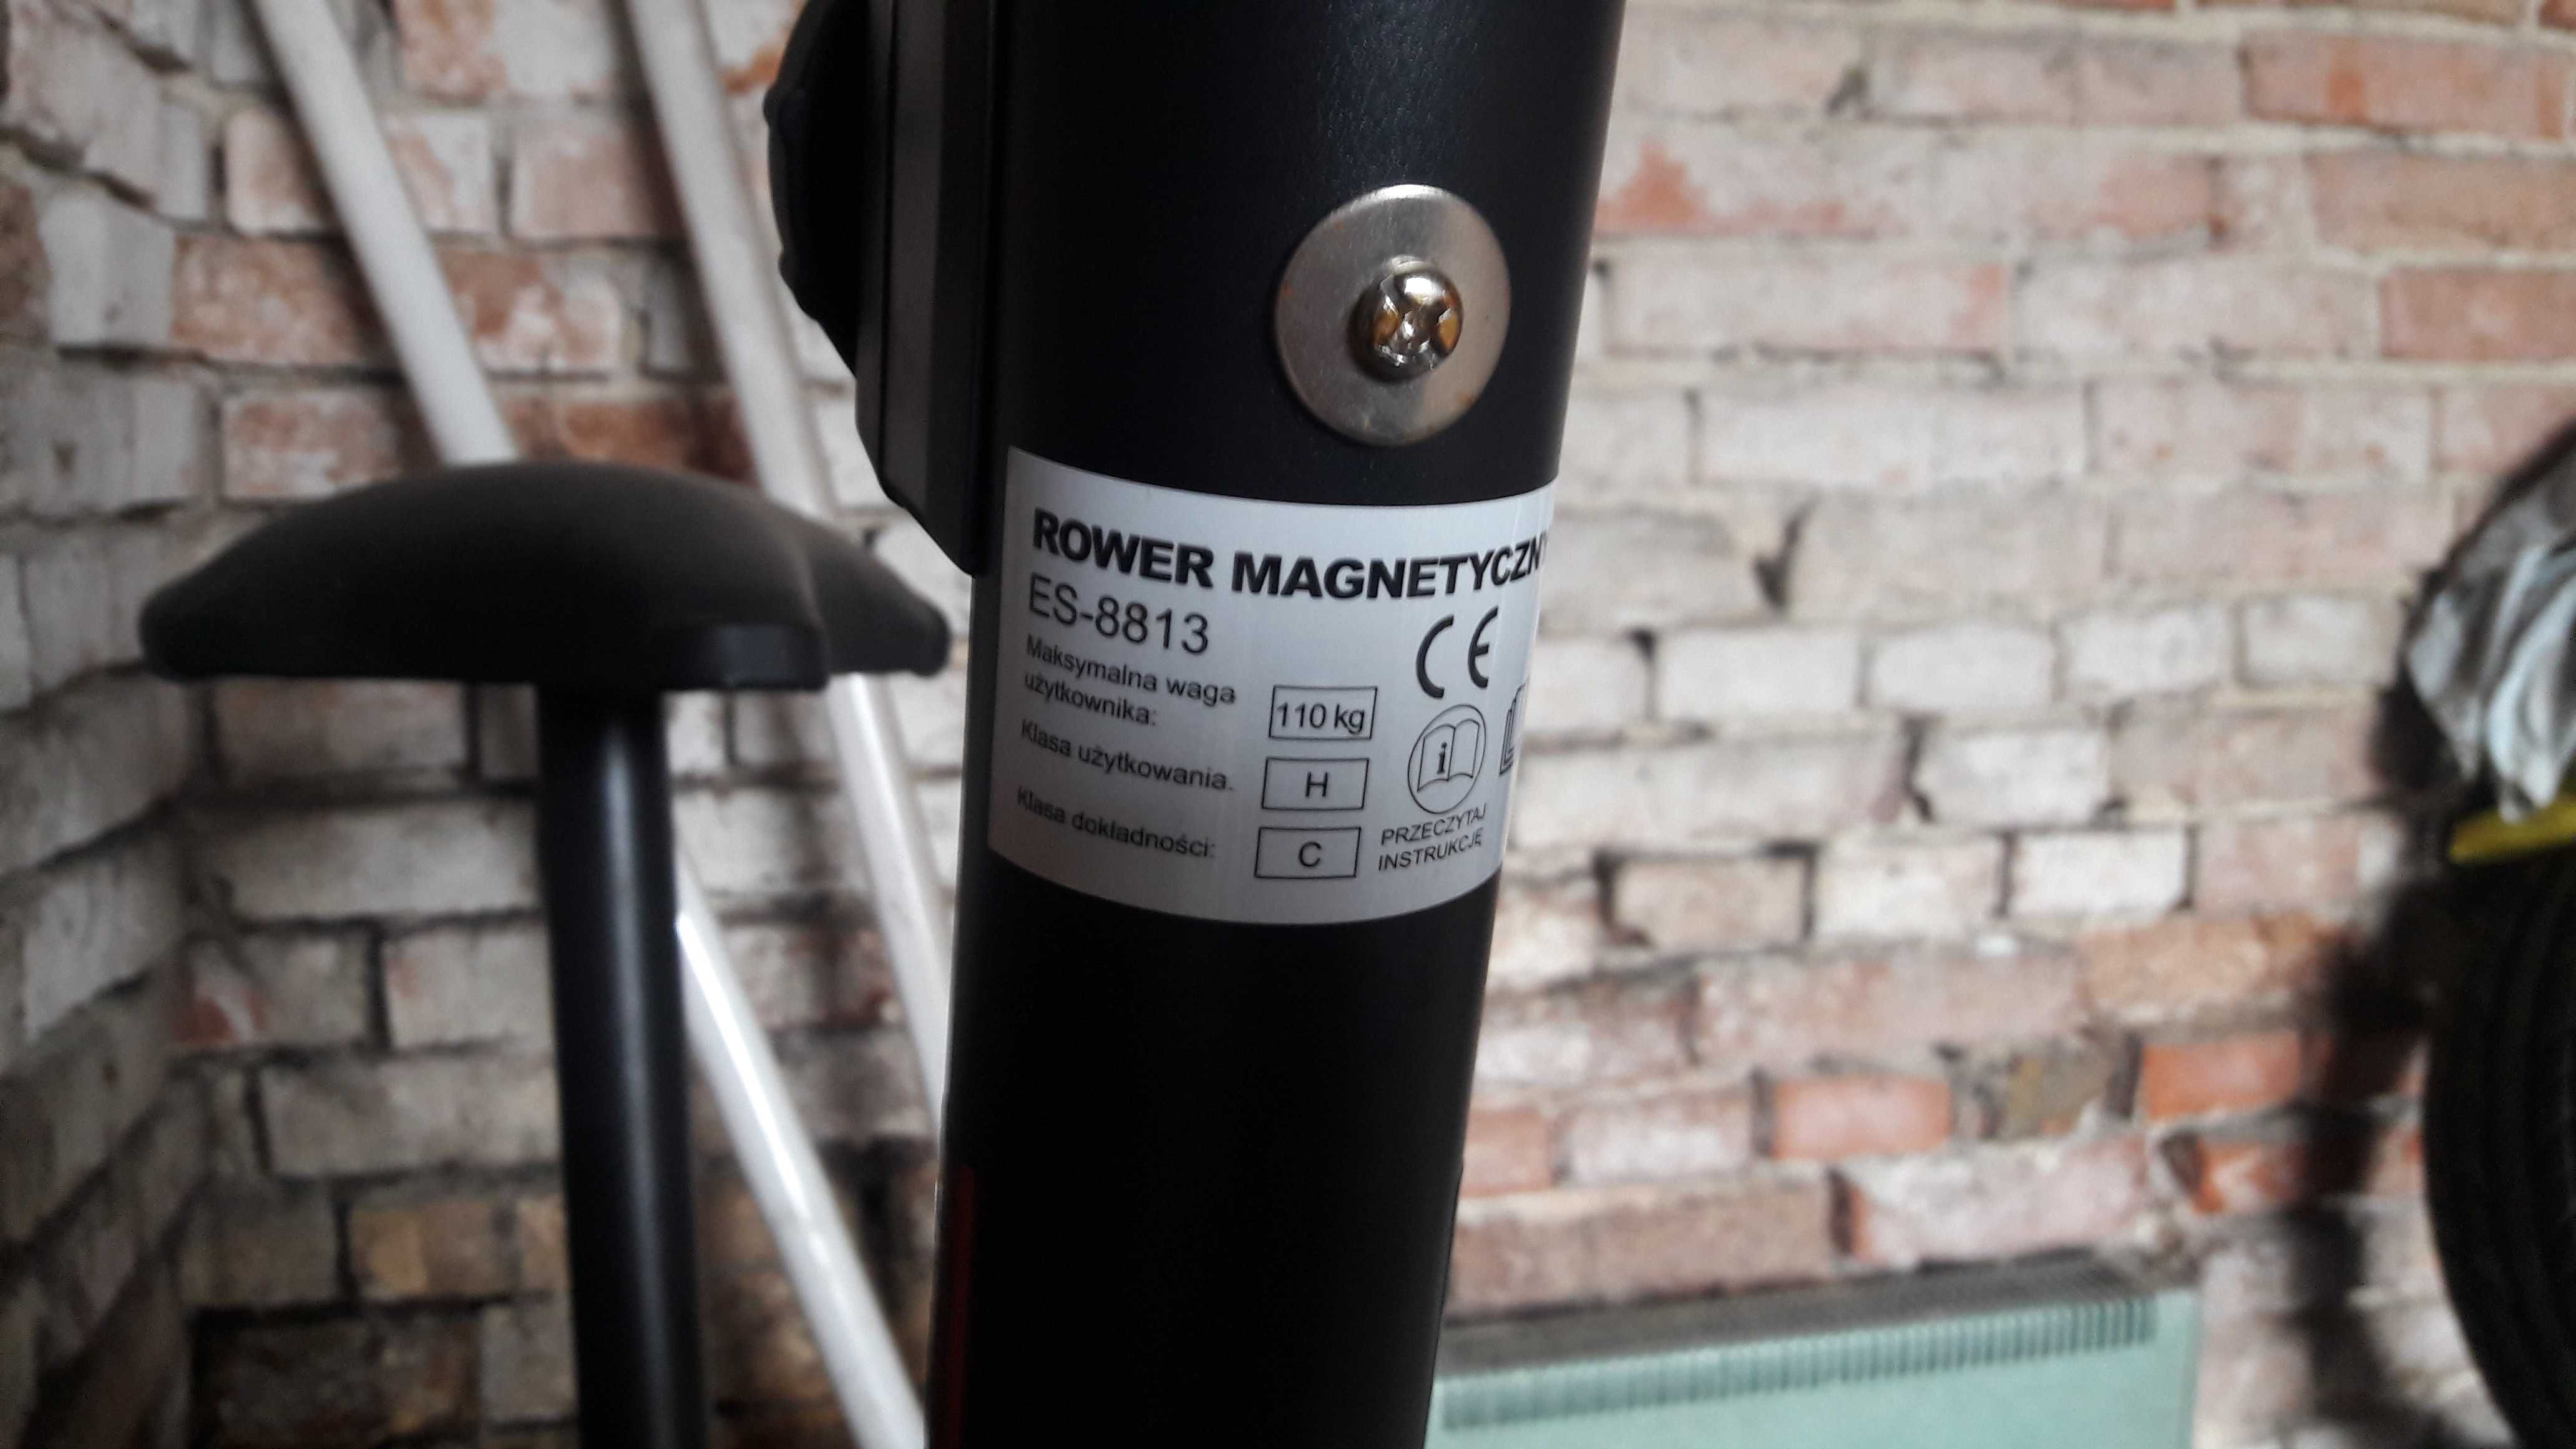 Rower magnetyczy ES-8813